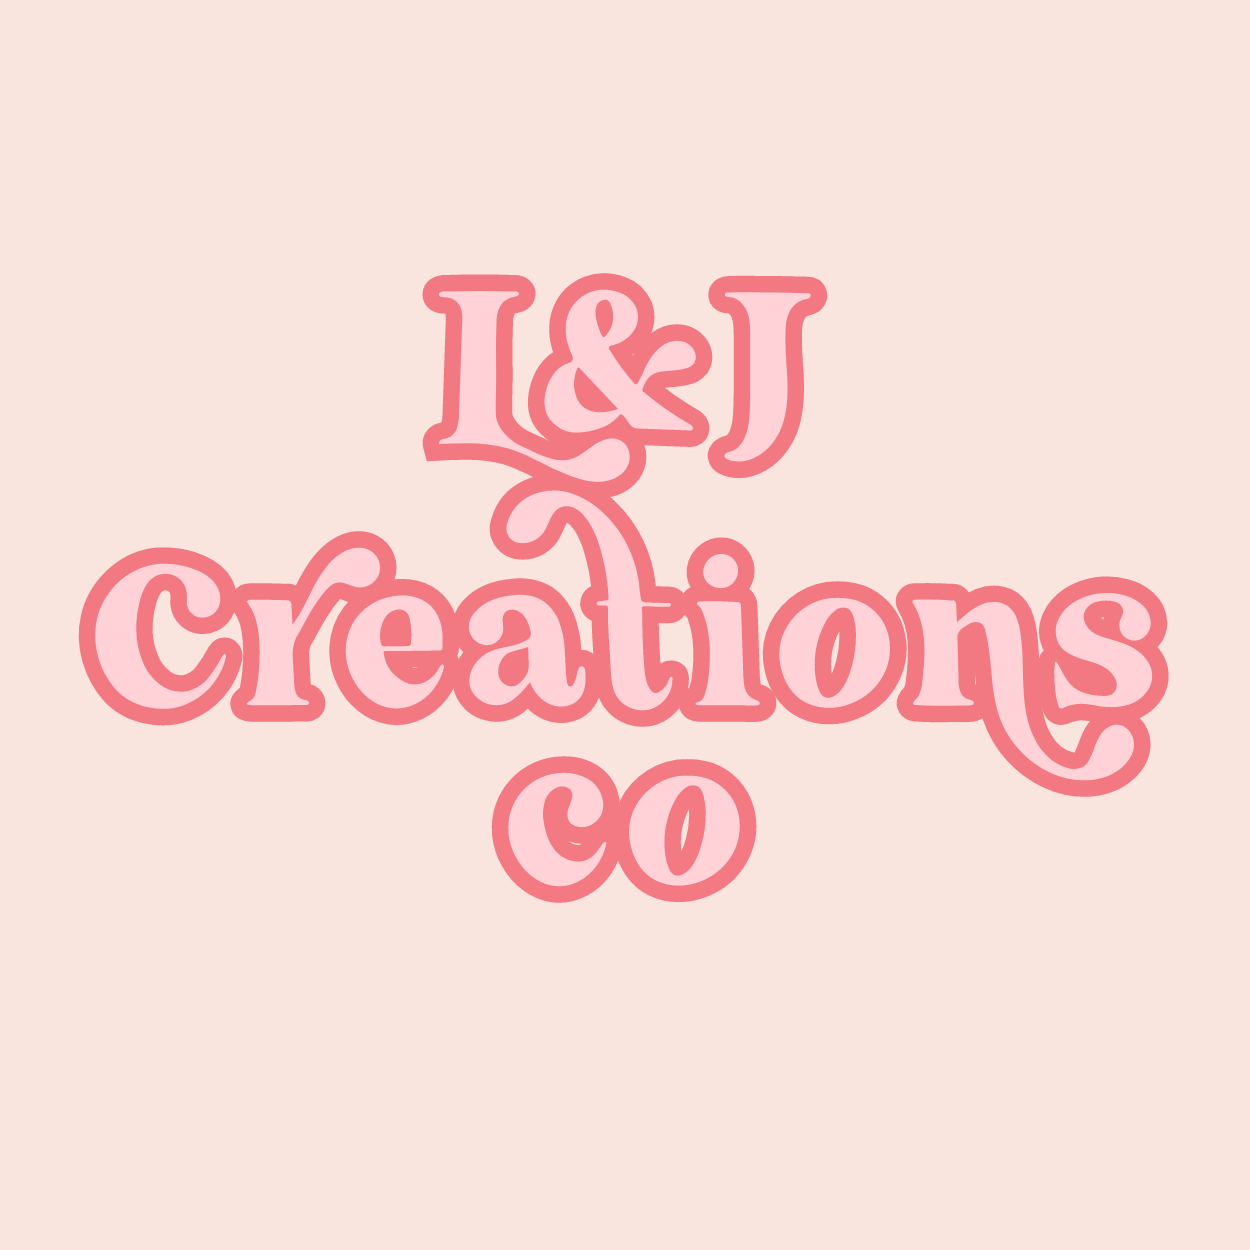 L & J Creations Co